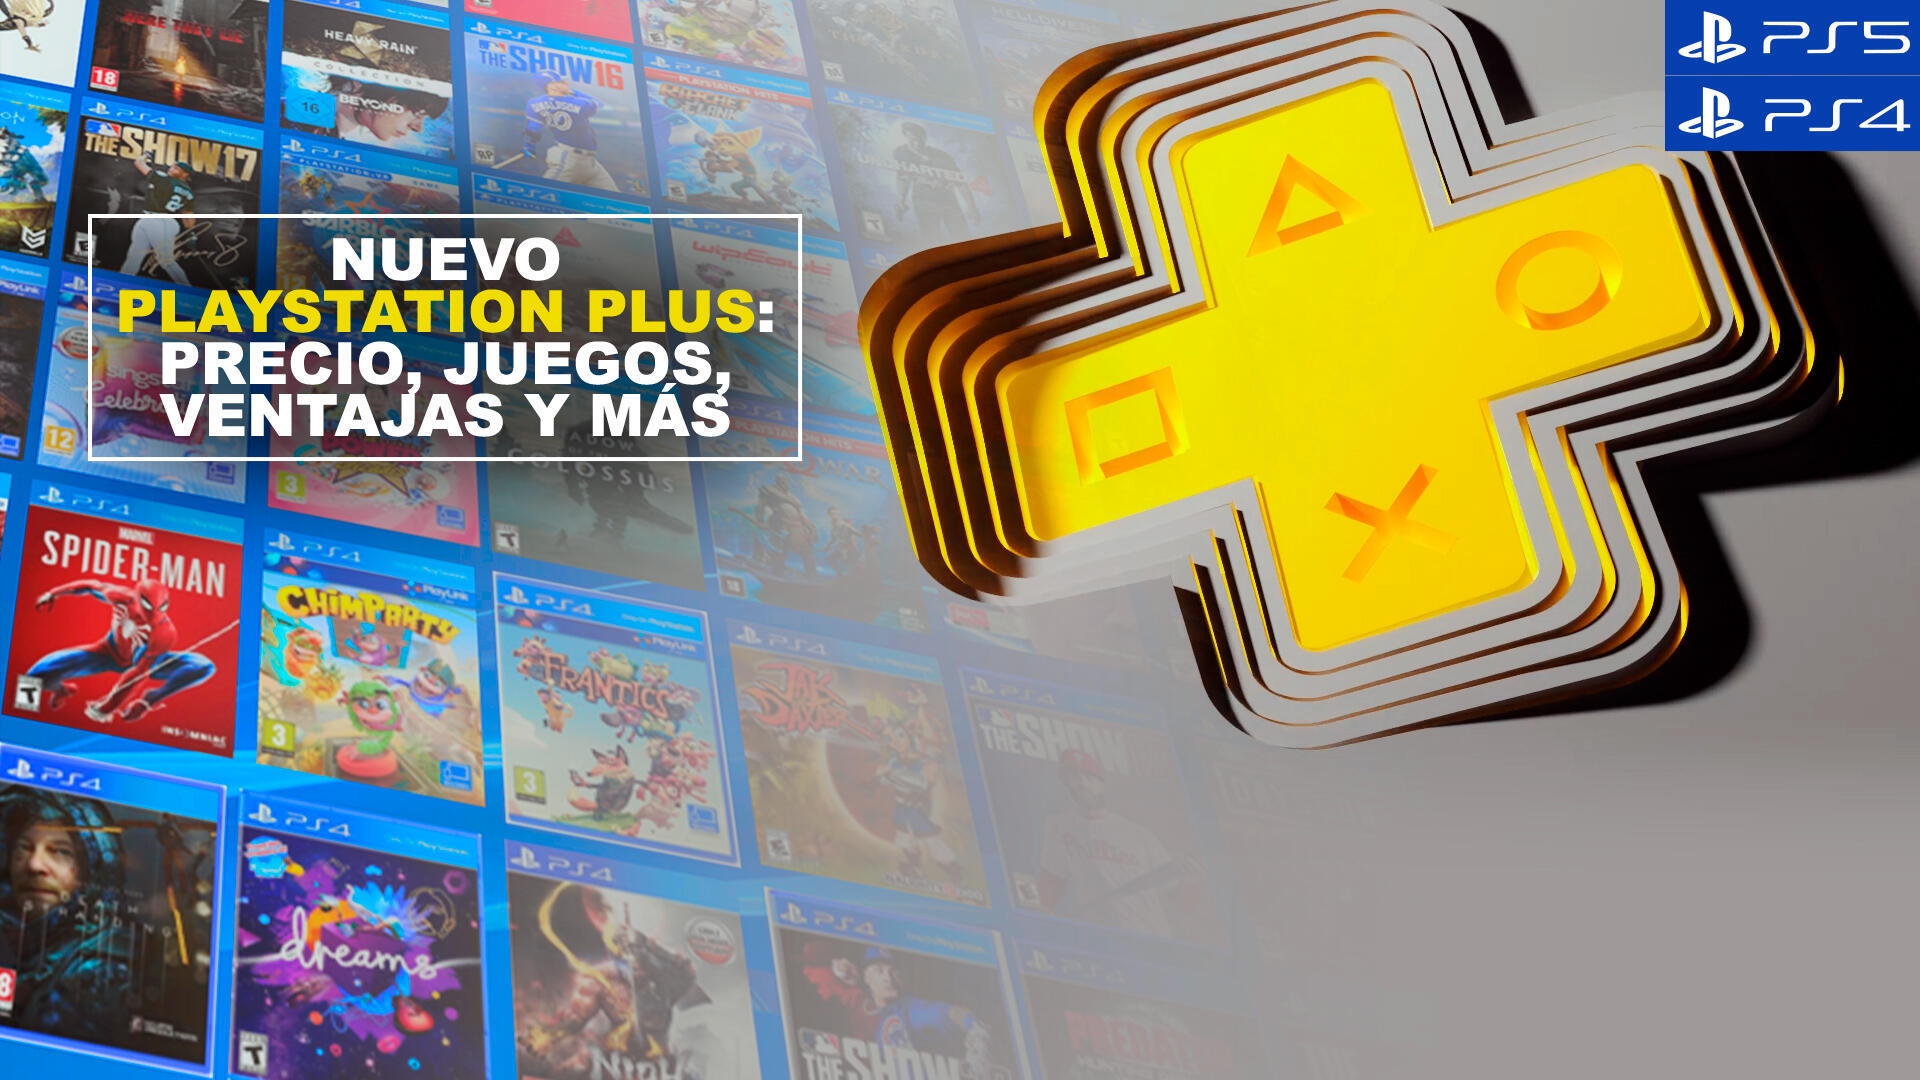 Viva Deudor Repetirse Nuevo PlayStation Plus: Precio, juegos, ventajas y más